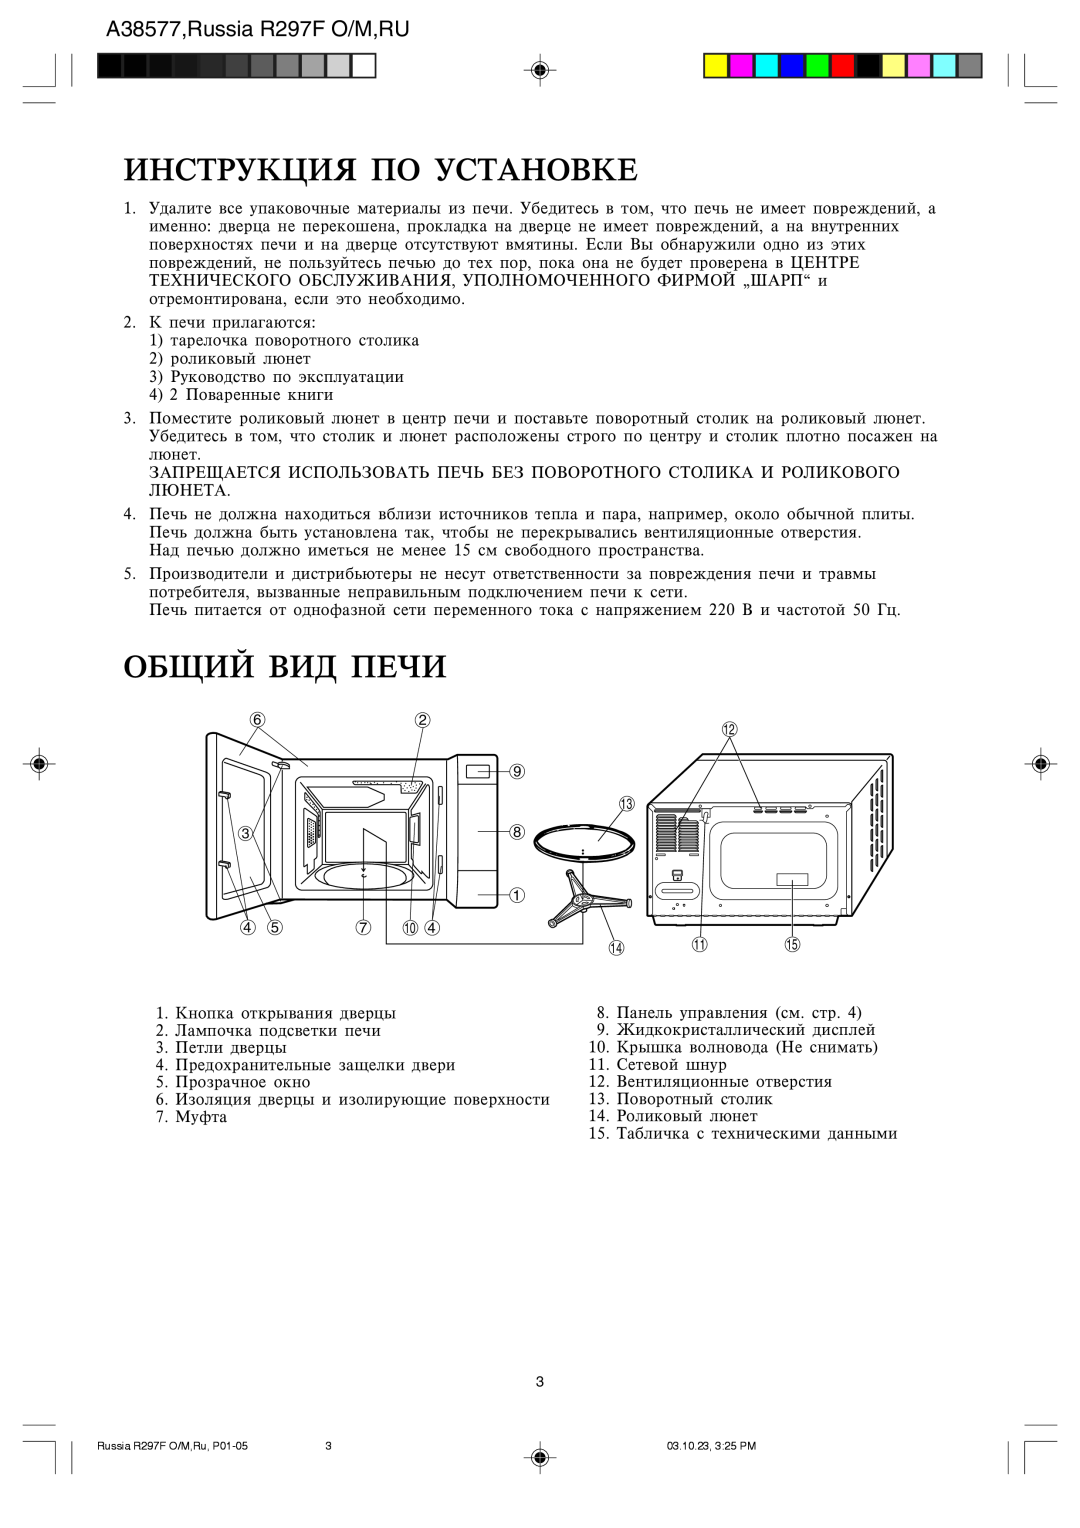 Sharp R-297F operation manual Bzcnherwby Gj Ecnfzjdrt, Jobq Dbl Gtxb, A38577,Russia R297F O/M,RU 